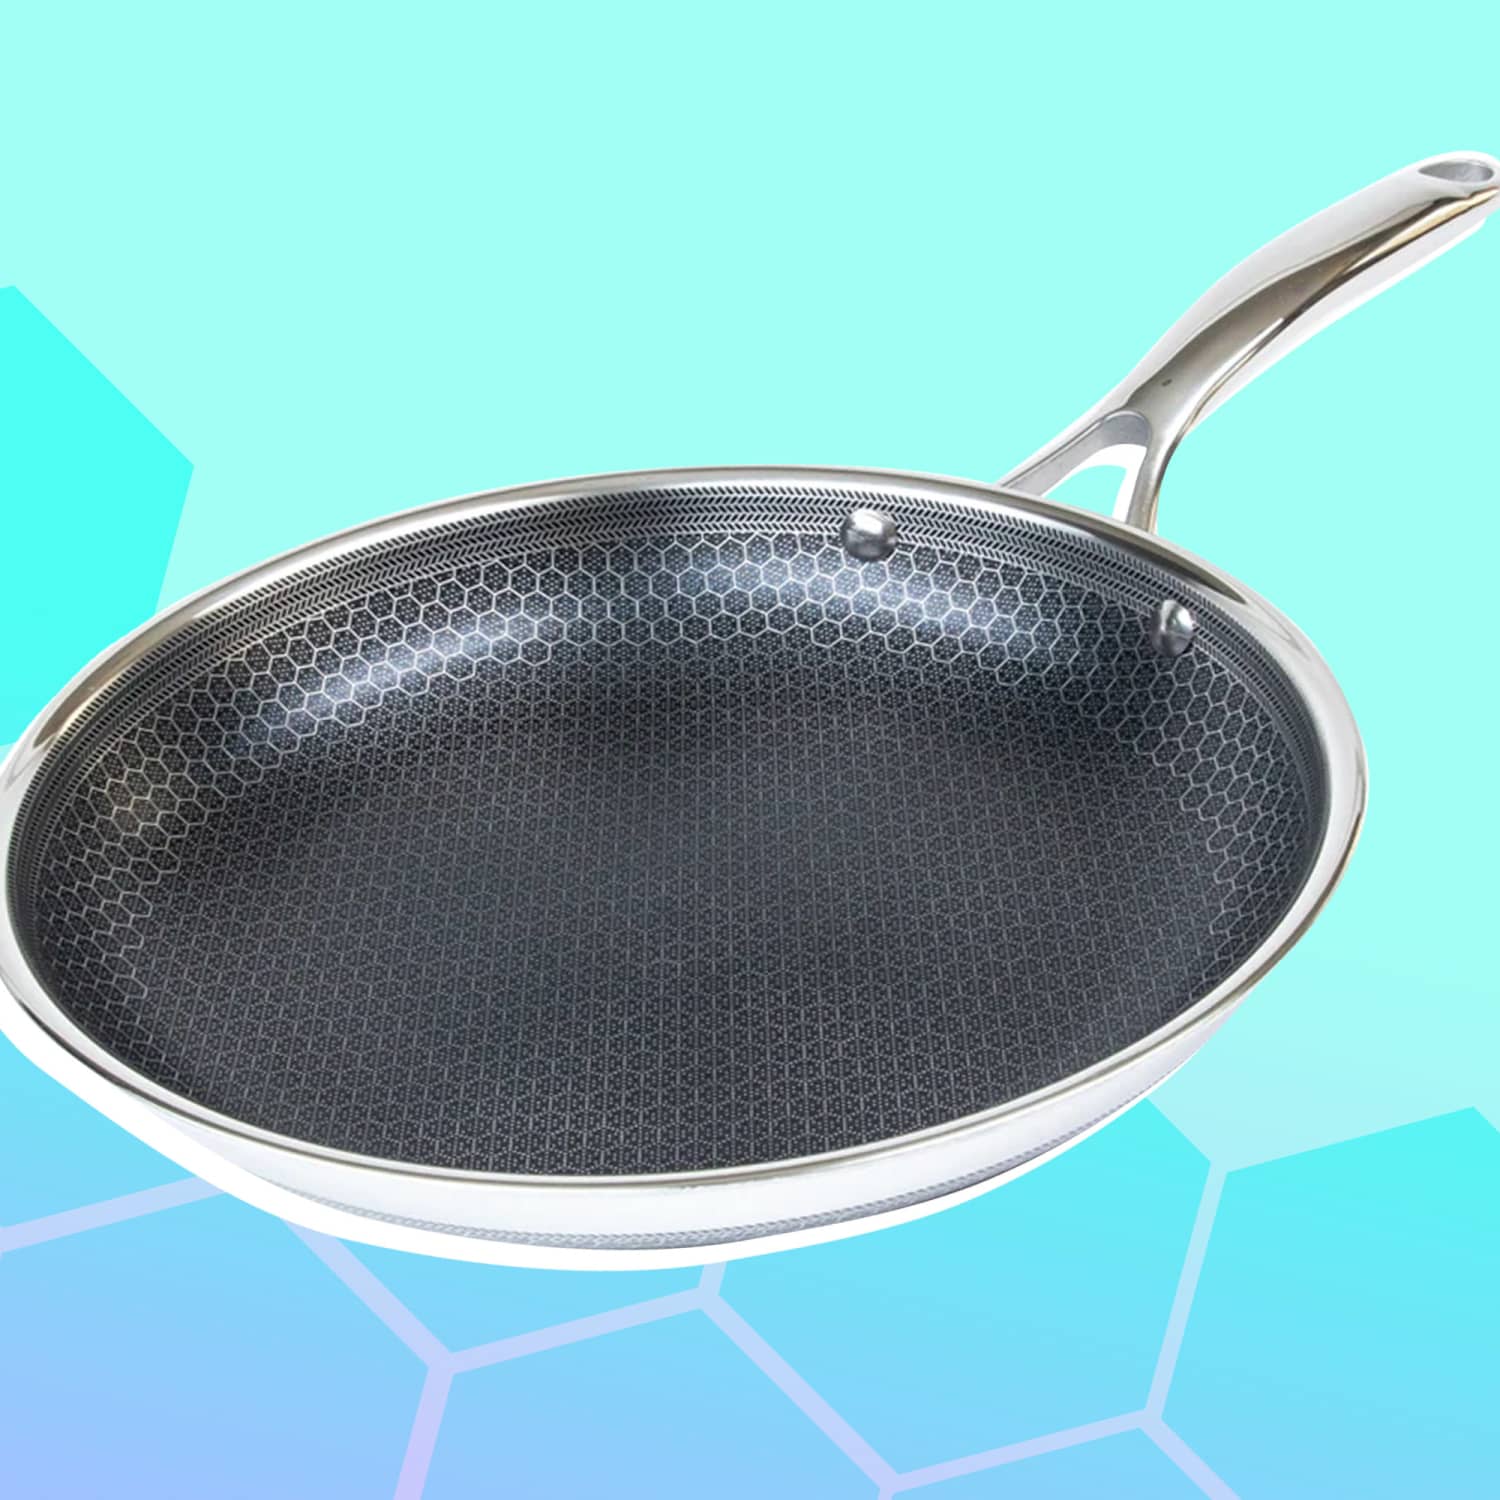  HexClad Hybrid Nonstick 14-Inch Frying Pan with Steel